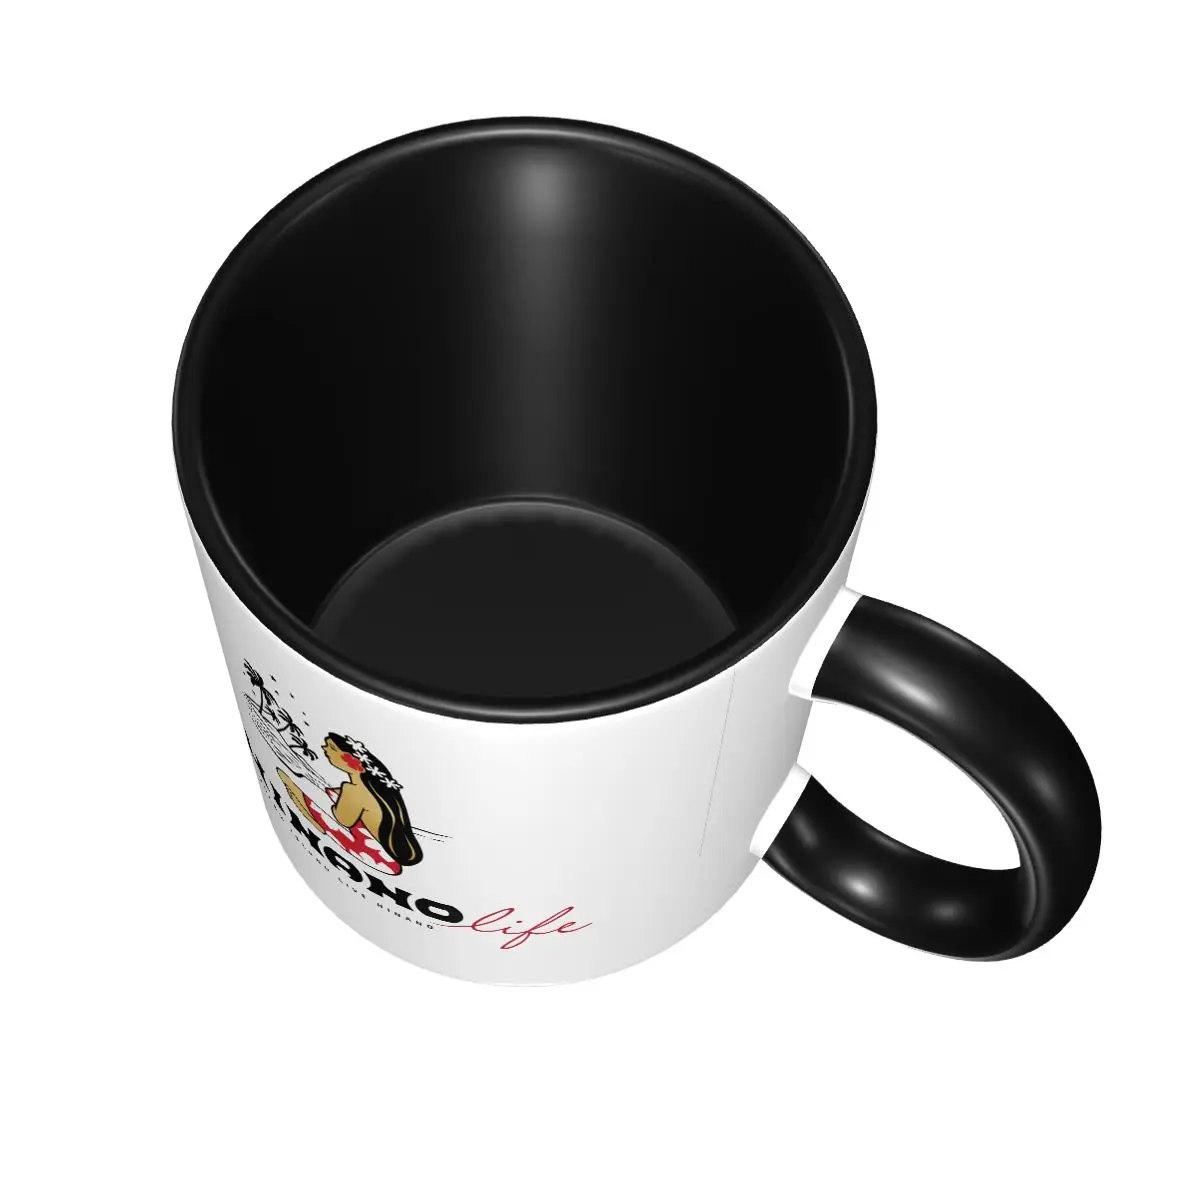 Hinano Таити 837 кружка чашки кофейная чашка посуда для напитков Сакура керамическая